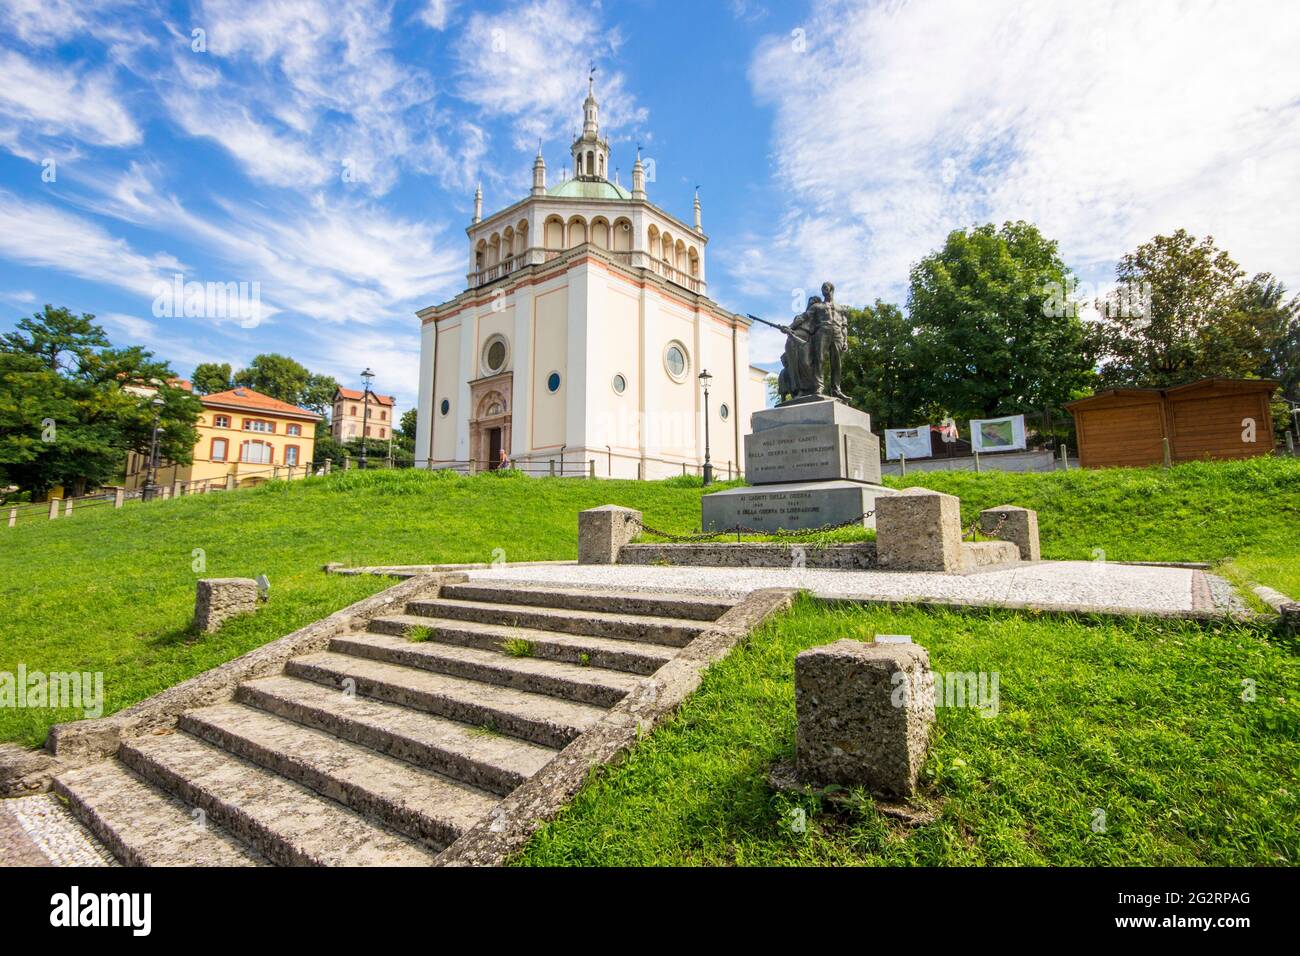 Crespi d'Adda, eine historische Siedlung in der Lombardei, Italien, ein großartiges Beispiel für die Firmenstädte des 19. Jahrhunderts in Europa. Weltkulturerbe Stockfoto